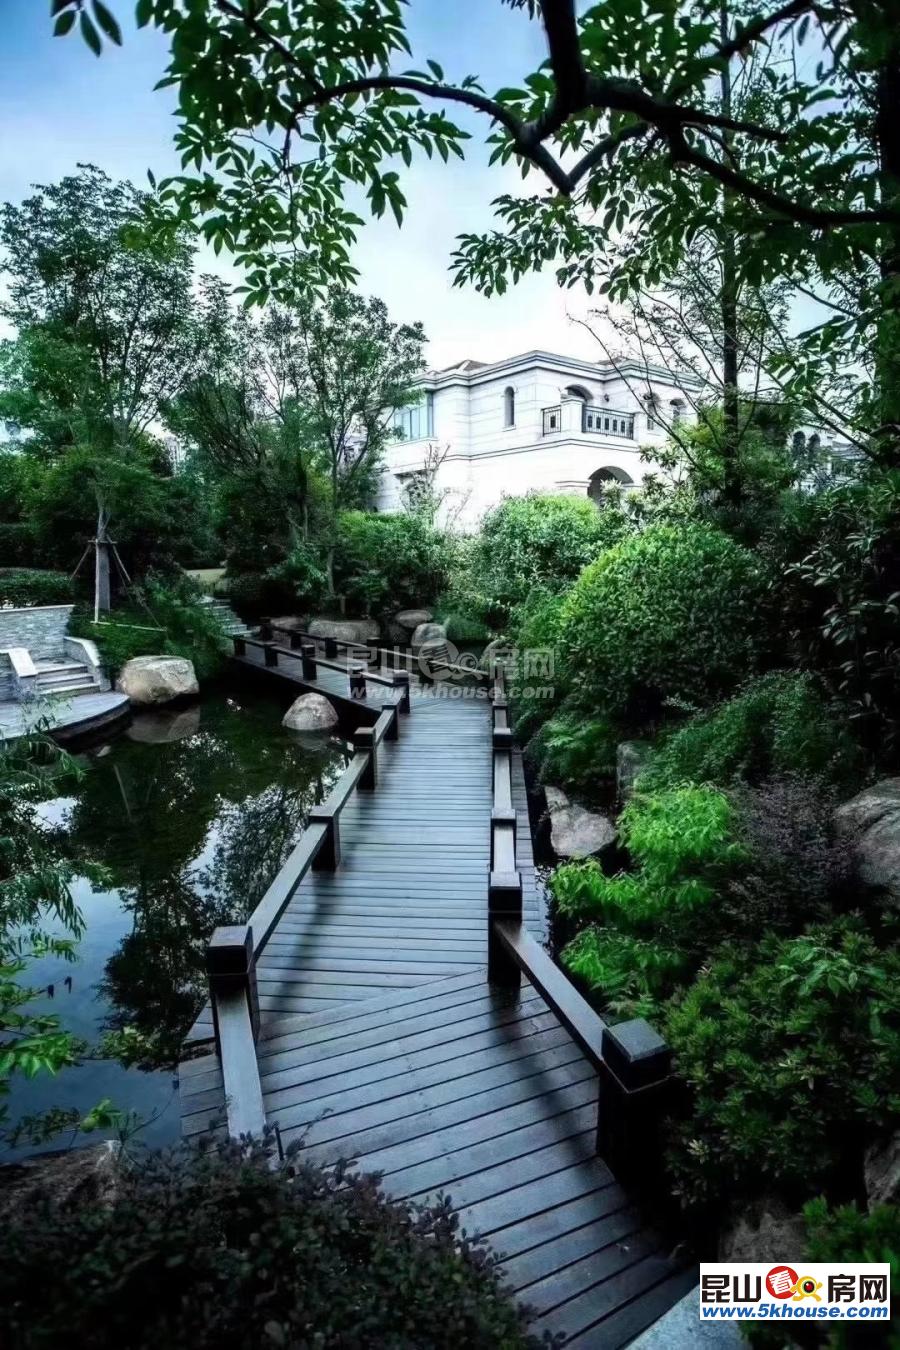 帝宝花园纯独栋社区 高尚、宁静、独具特色 自然资源 完美和谐